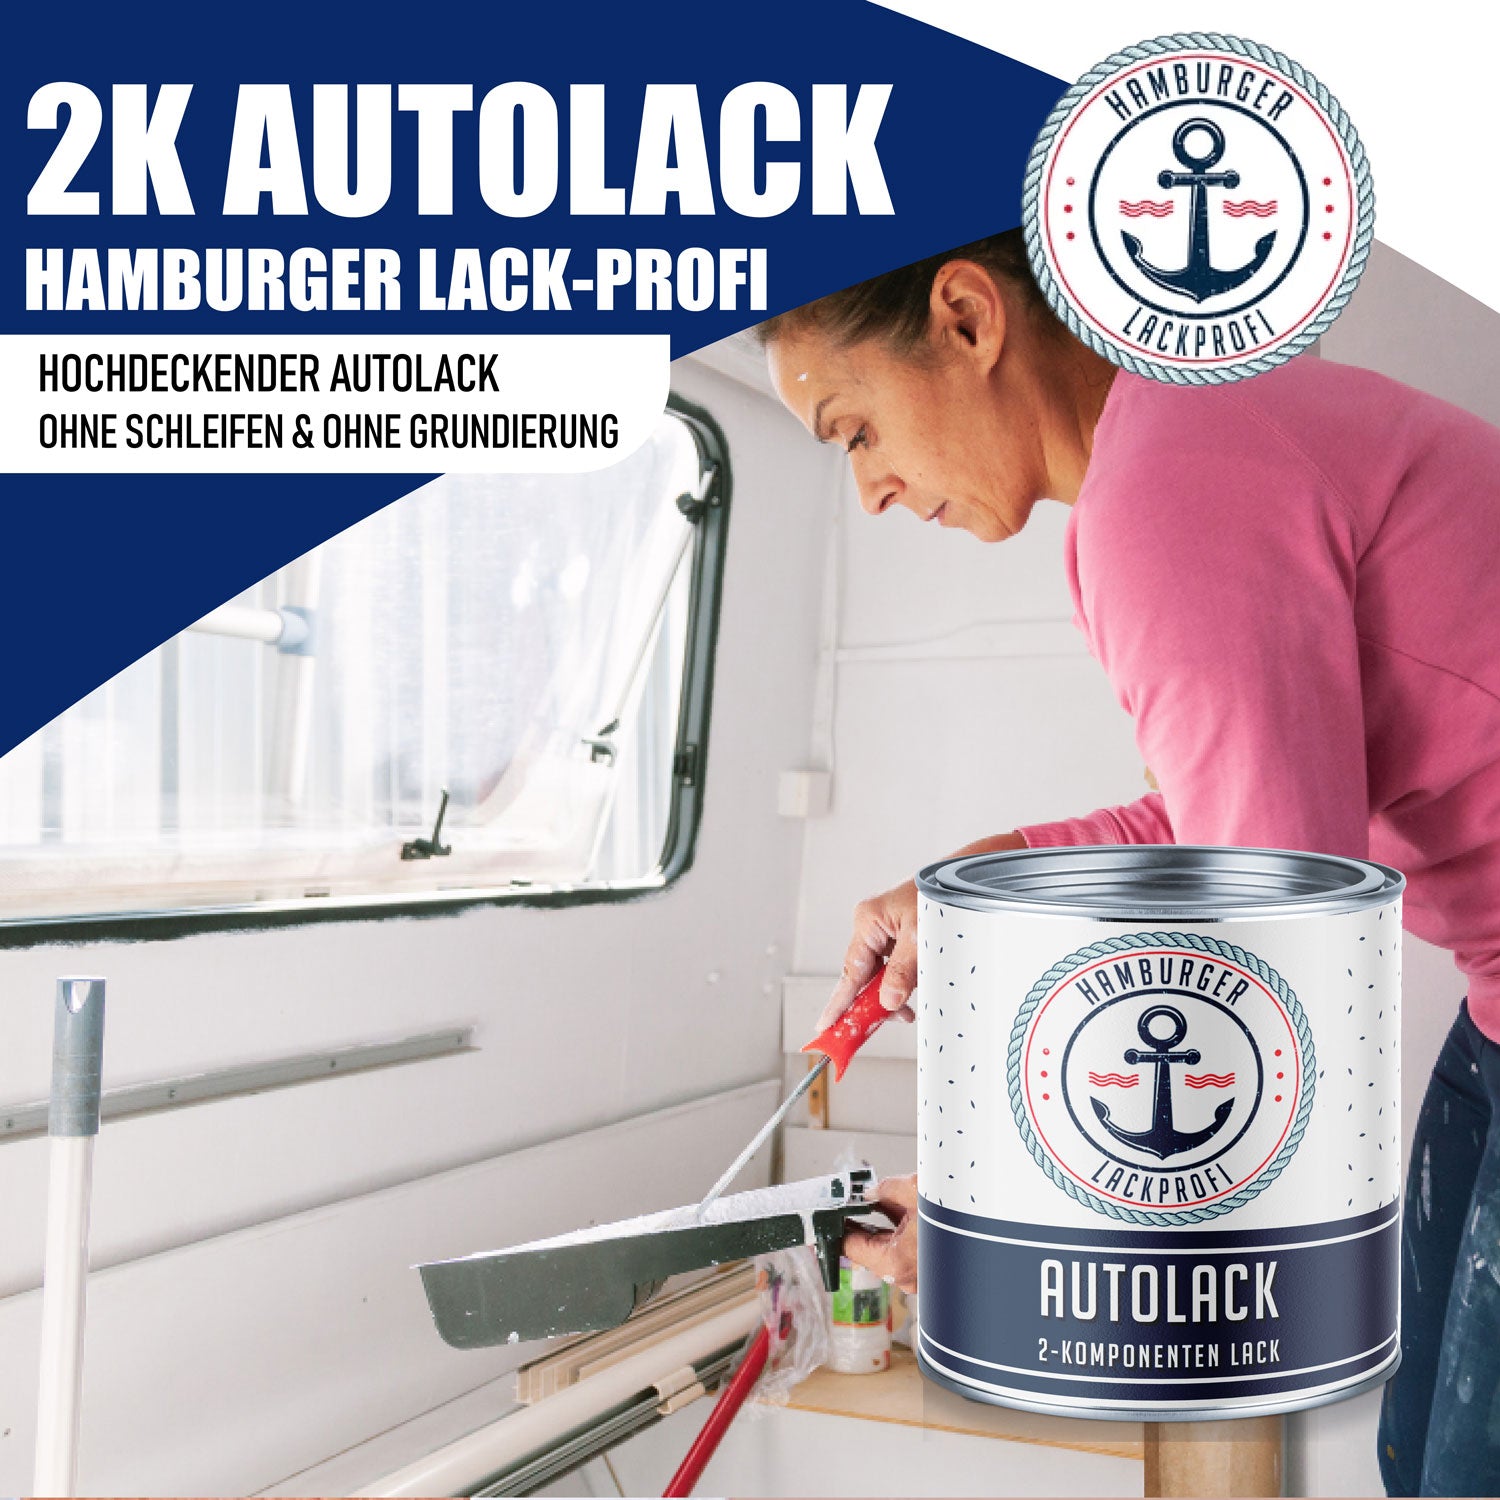 Hamburger Lack-Profi 2K Autolack Granitgrau RAL 7026 - hochdeckend & rostschützend